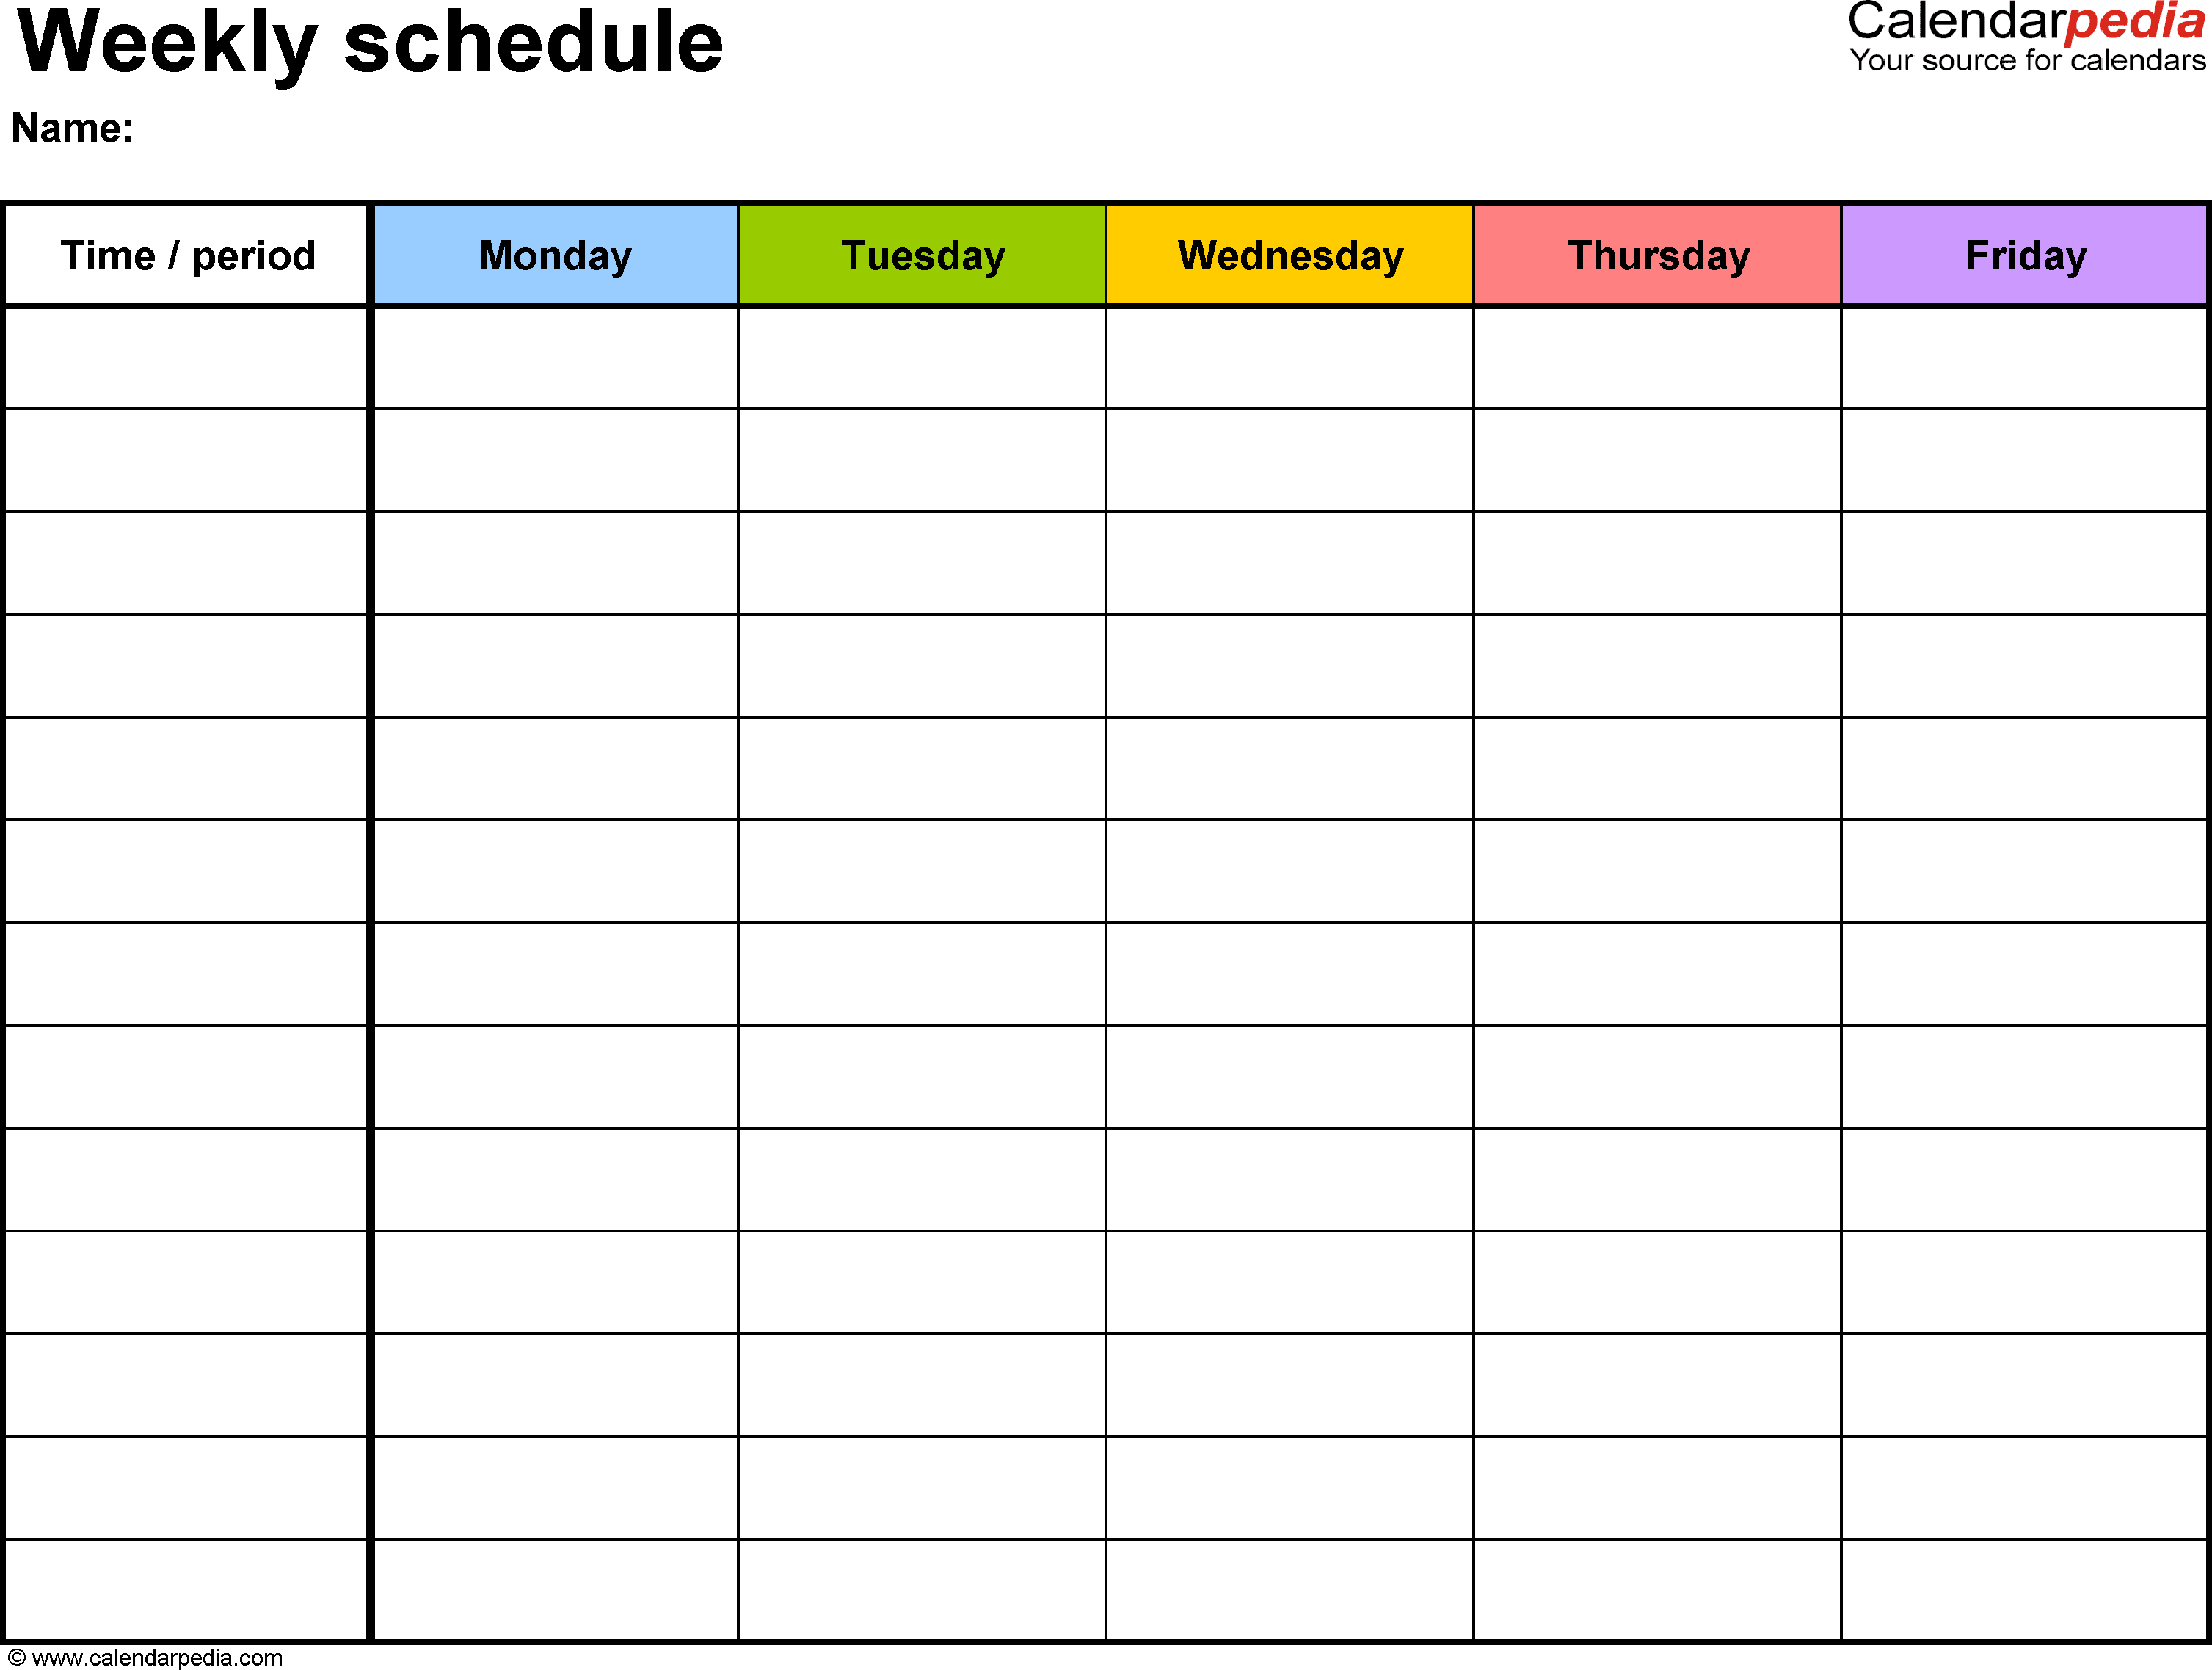 Calendar Template Monday Through Friday  Topa in Monday Through Friday Calendar